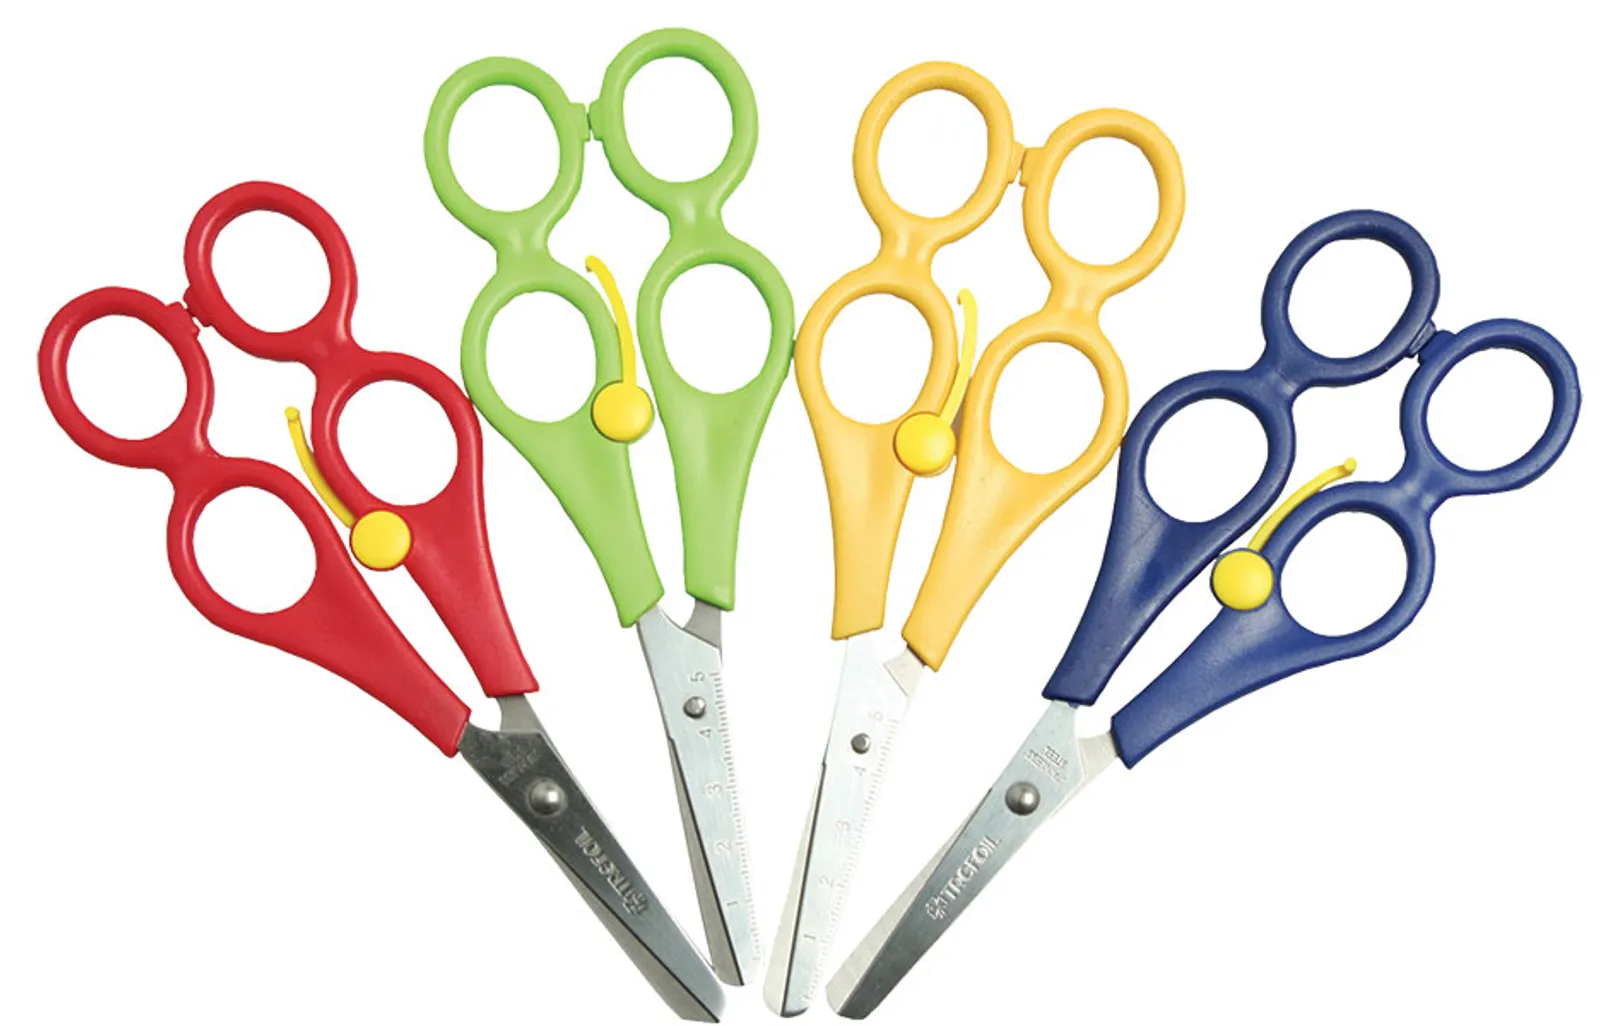 training scissors